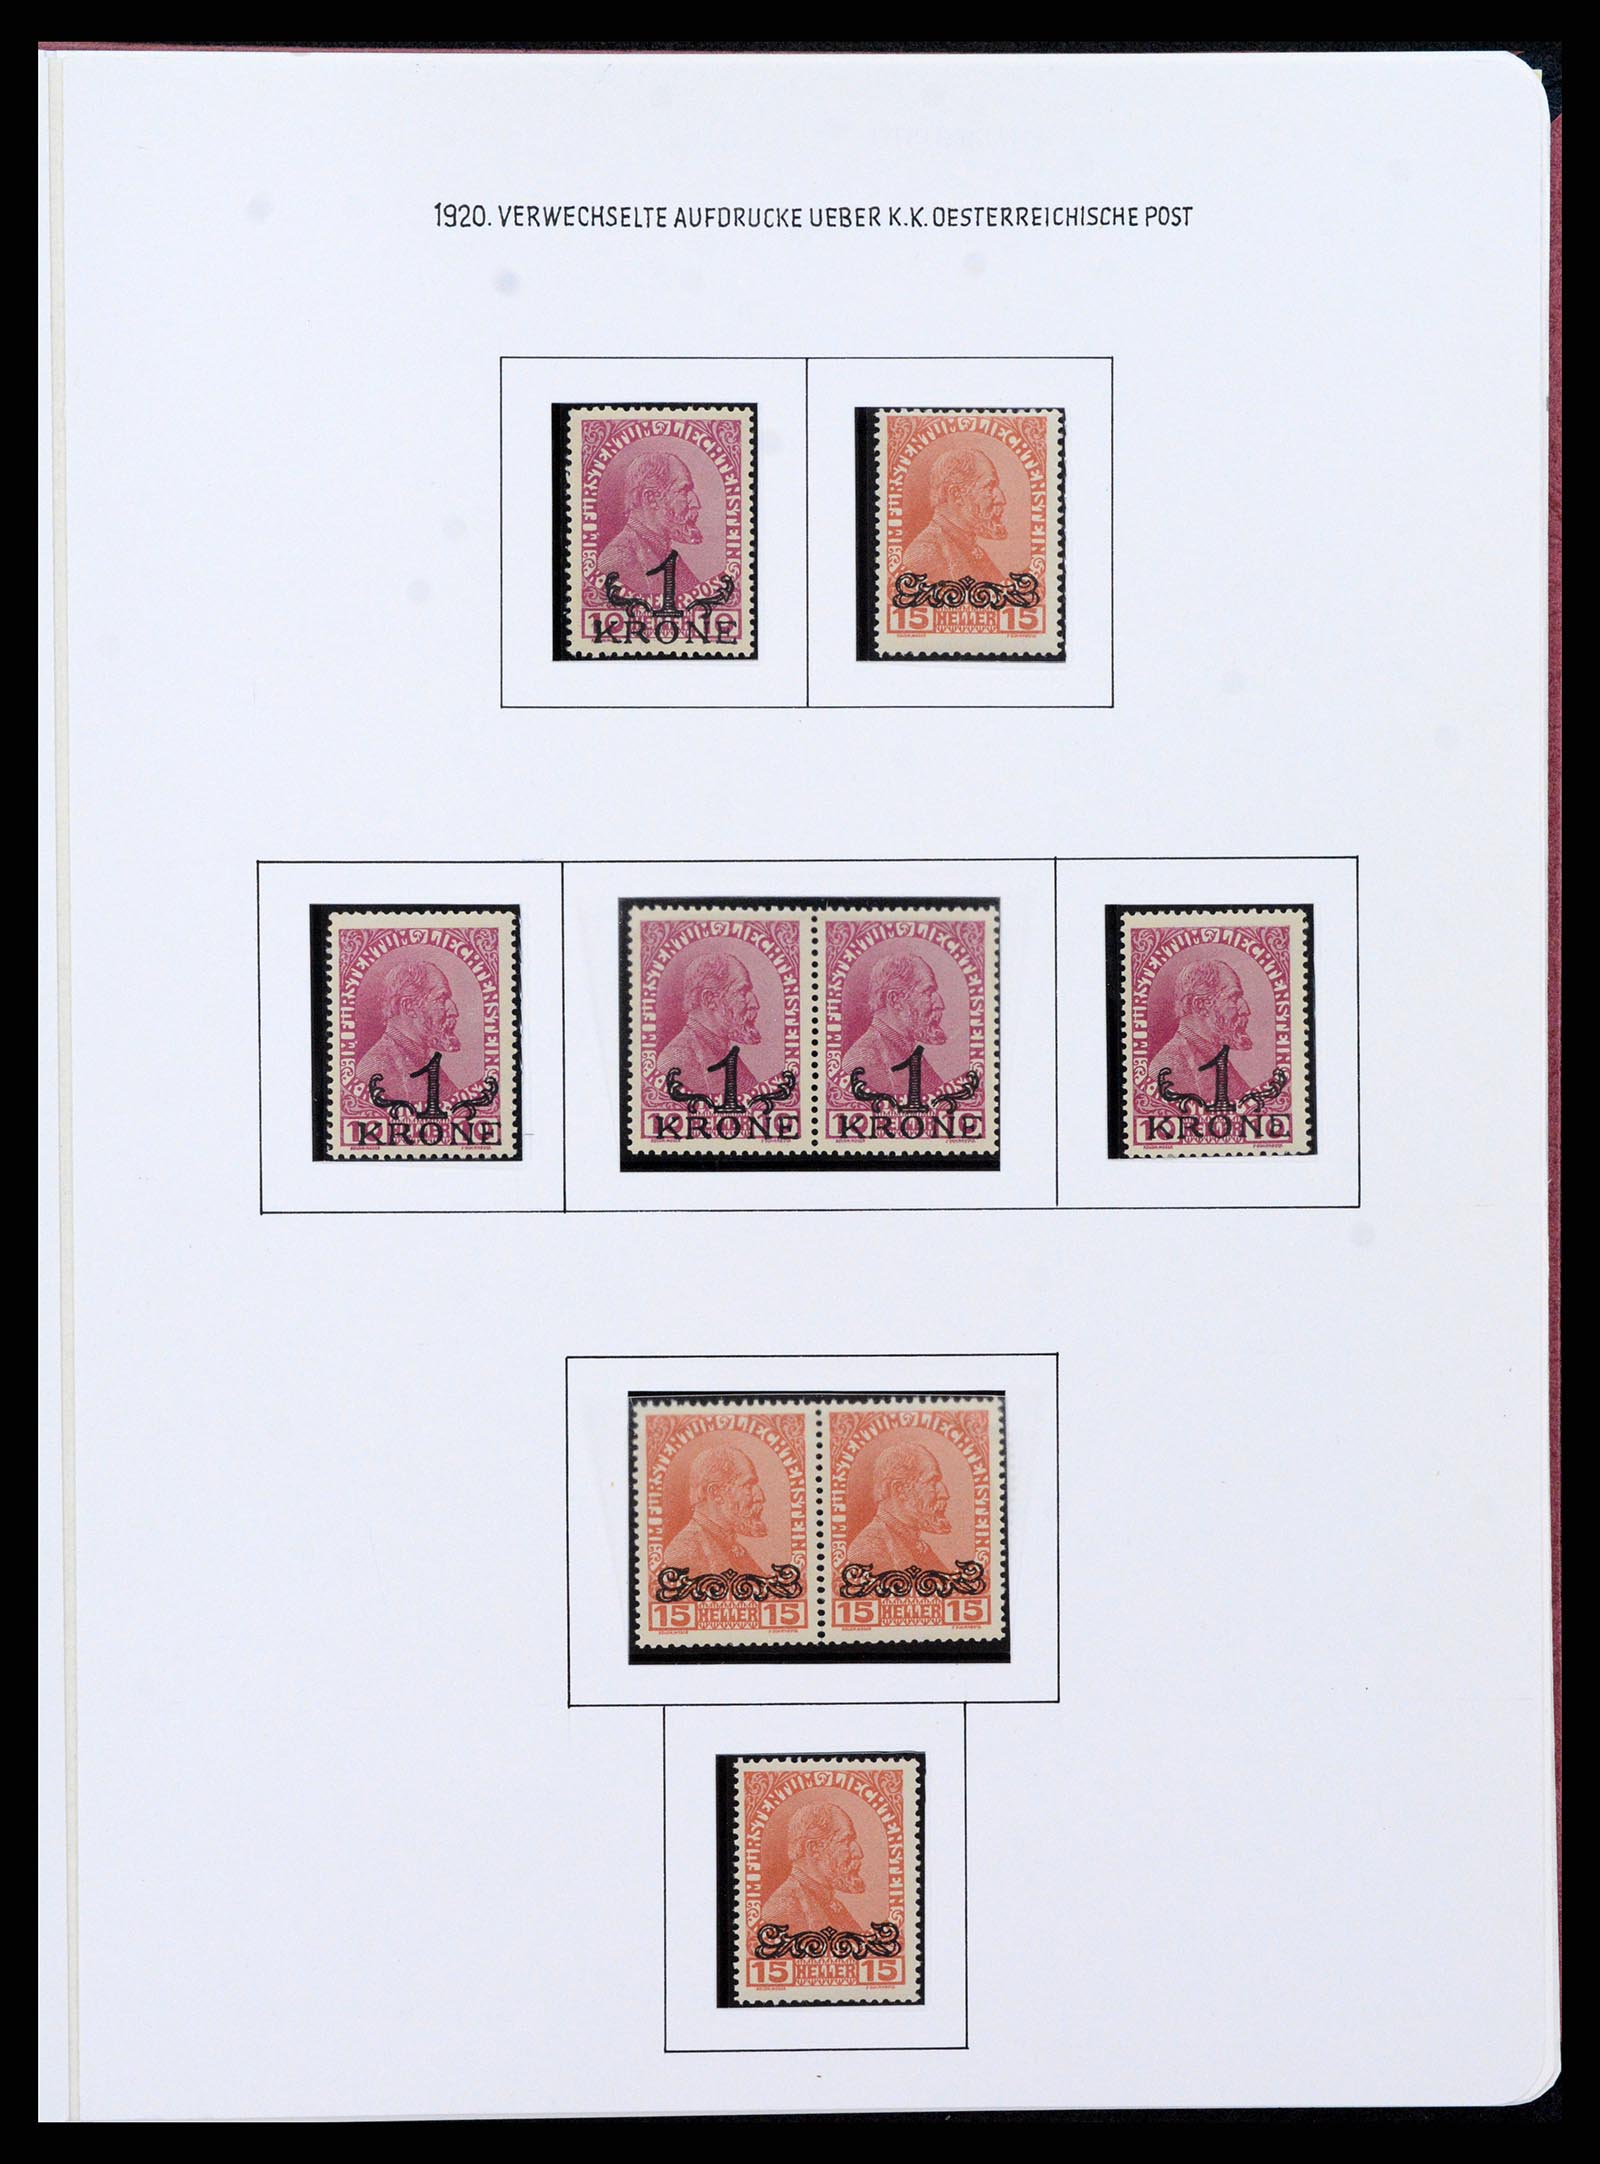 37150 0043 - Stamp collection 37150 Liechtenstein supercollection 1912-1962.